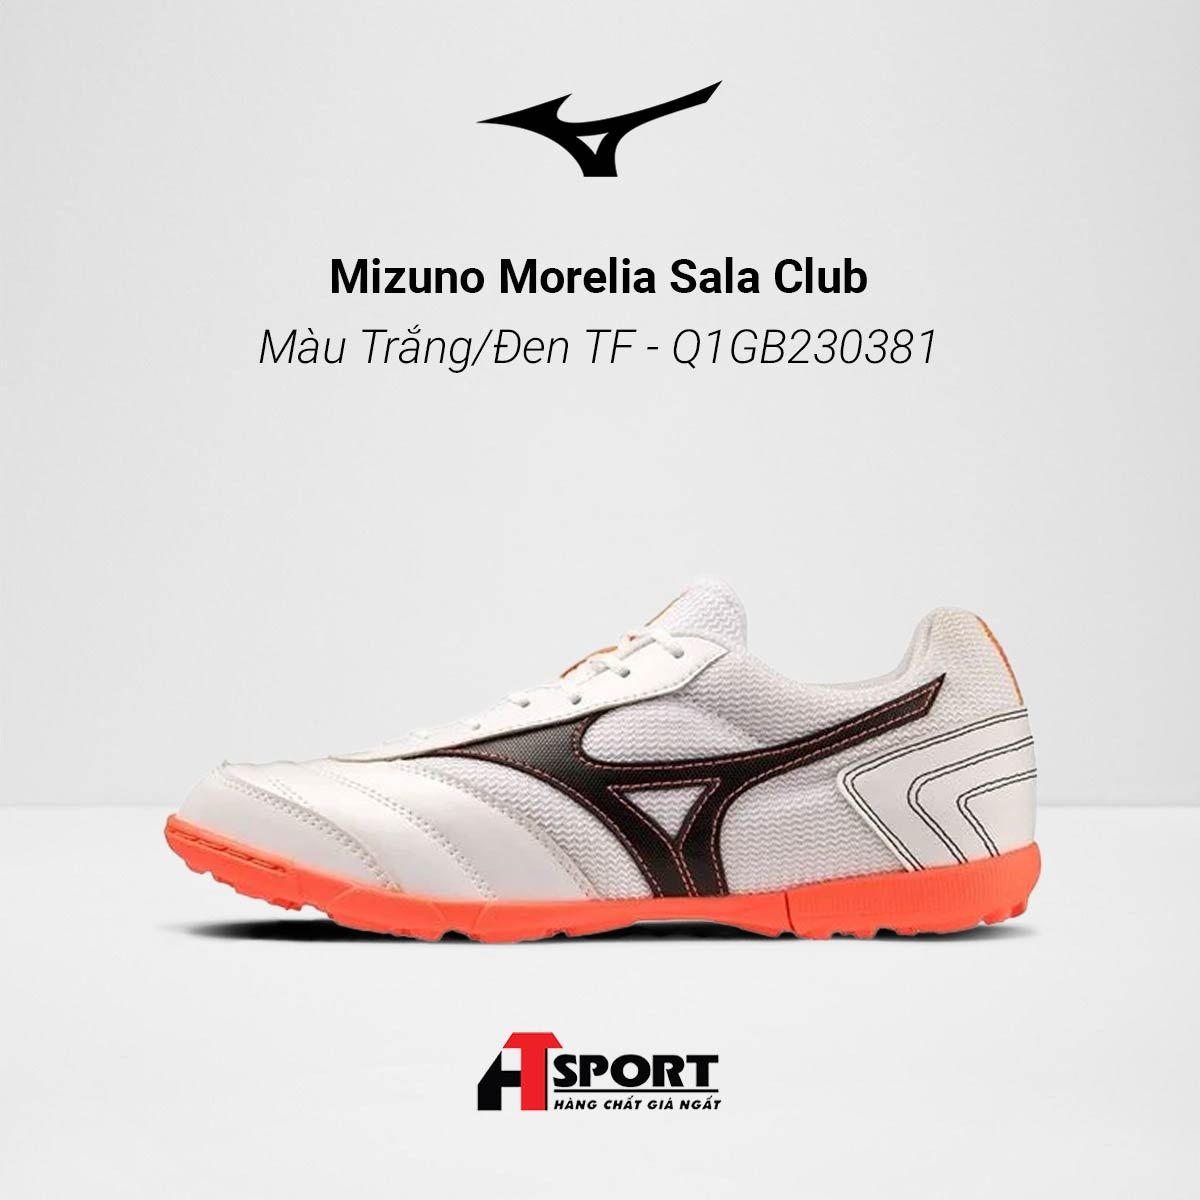  Mizuno Morelia Sala Club Màu Trắng/Đen TF - Q1GB230381 